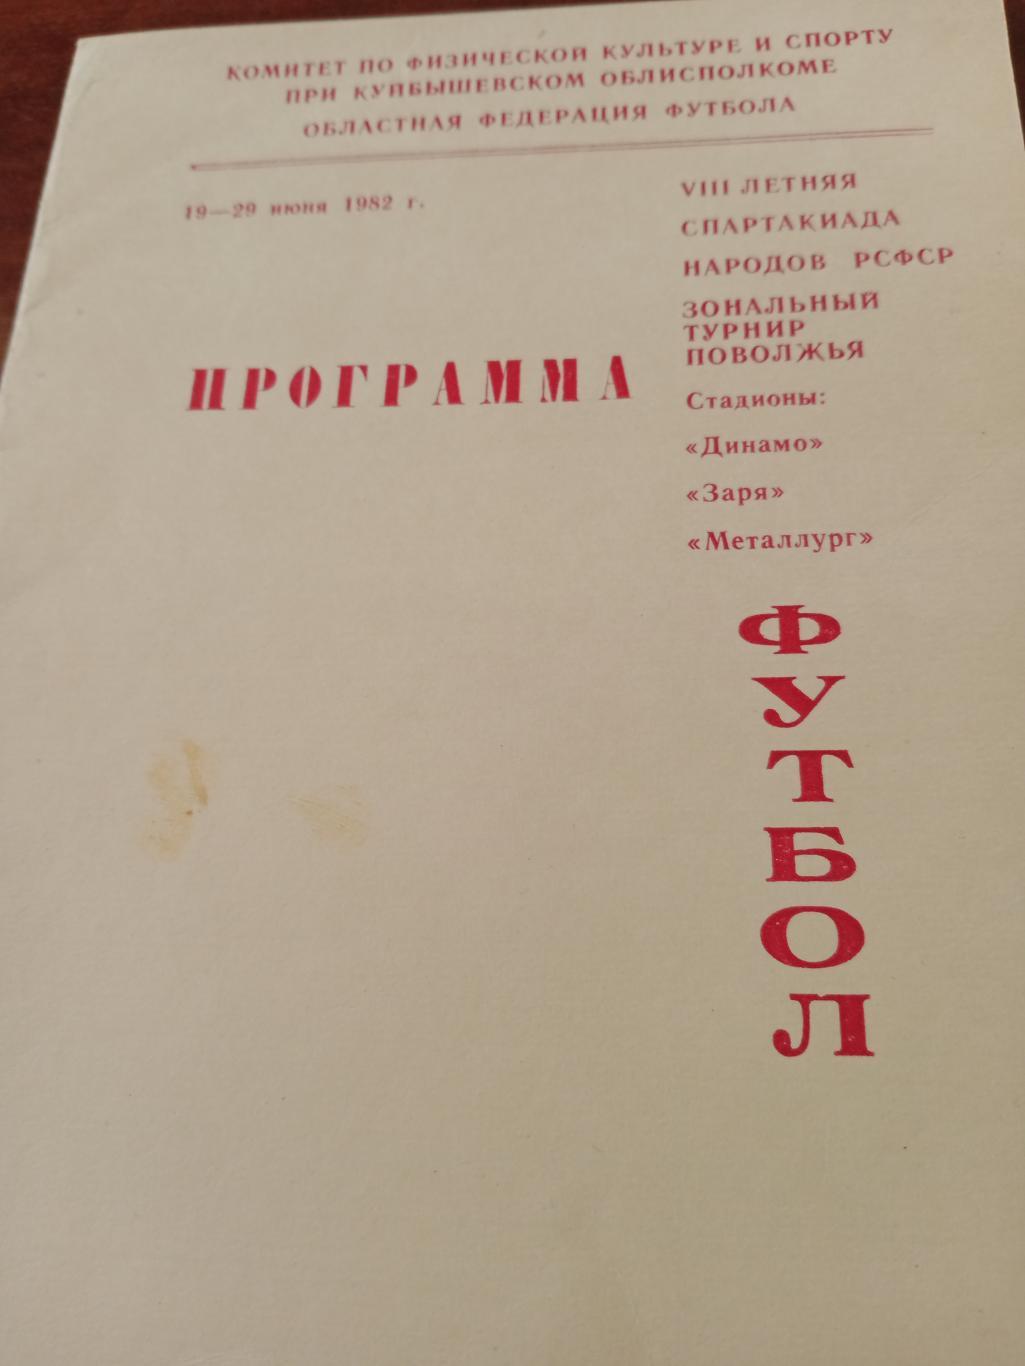 8 Спартакиада народов РСФСР. Куйбышев, 1982 г.